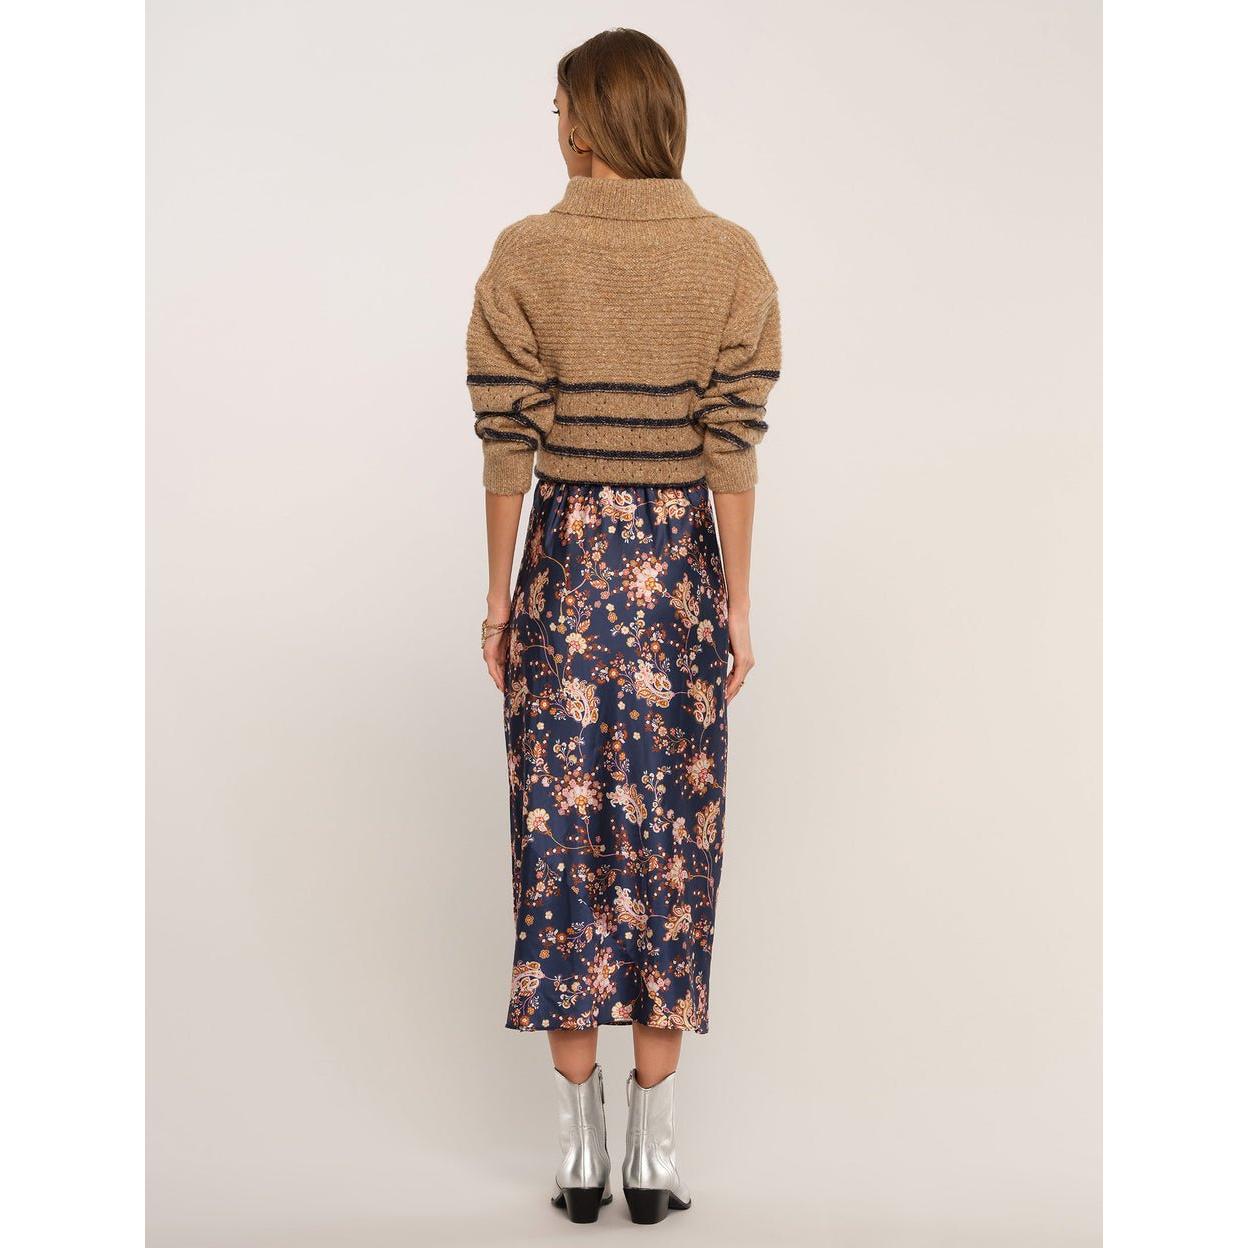 Heartoom - Sheridan Skirt in Navy Floral-SQ0028708